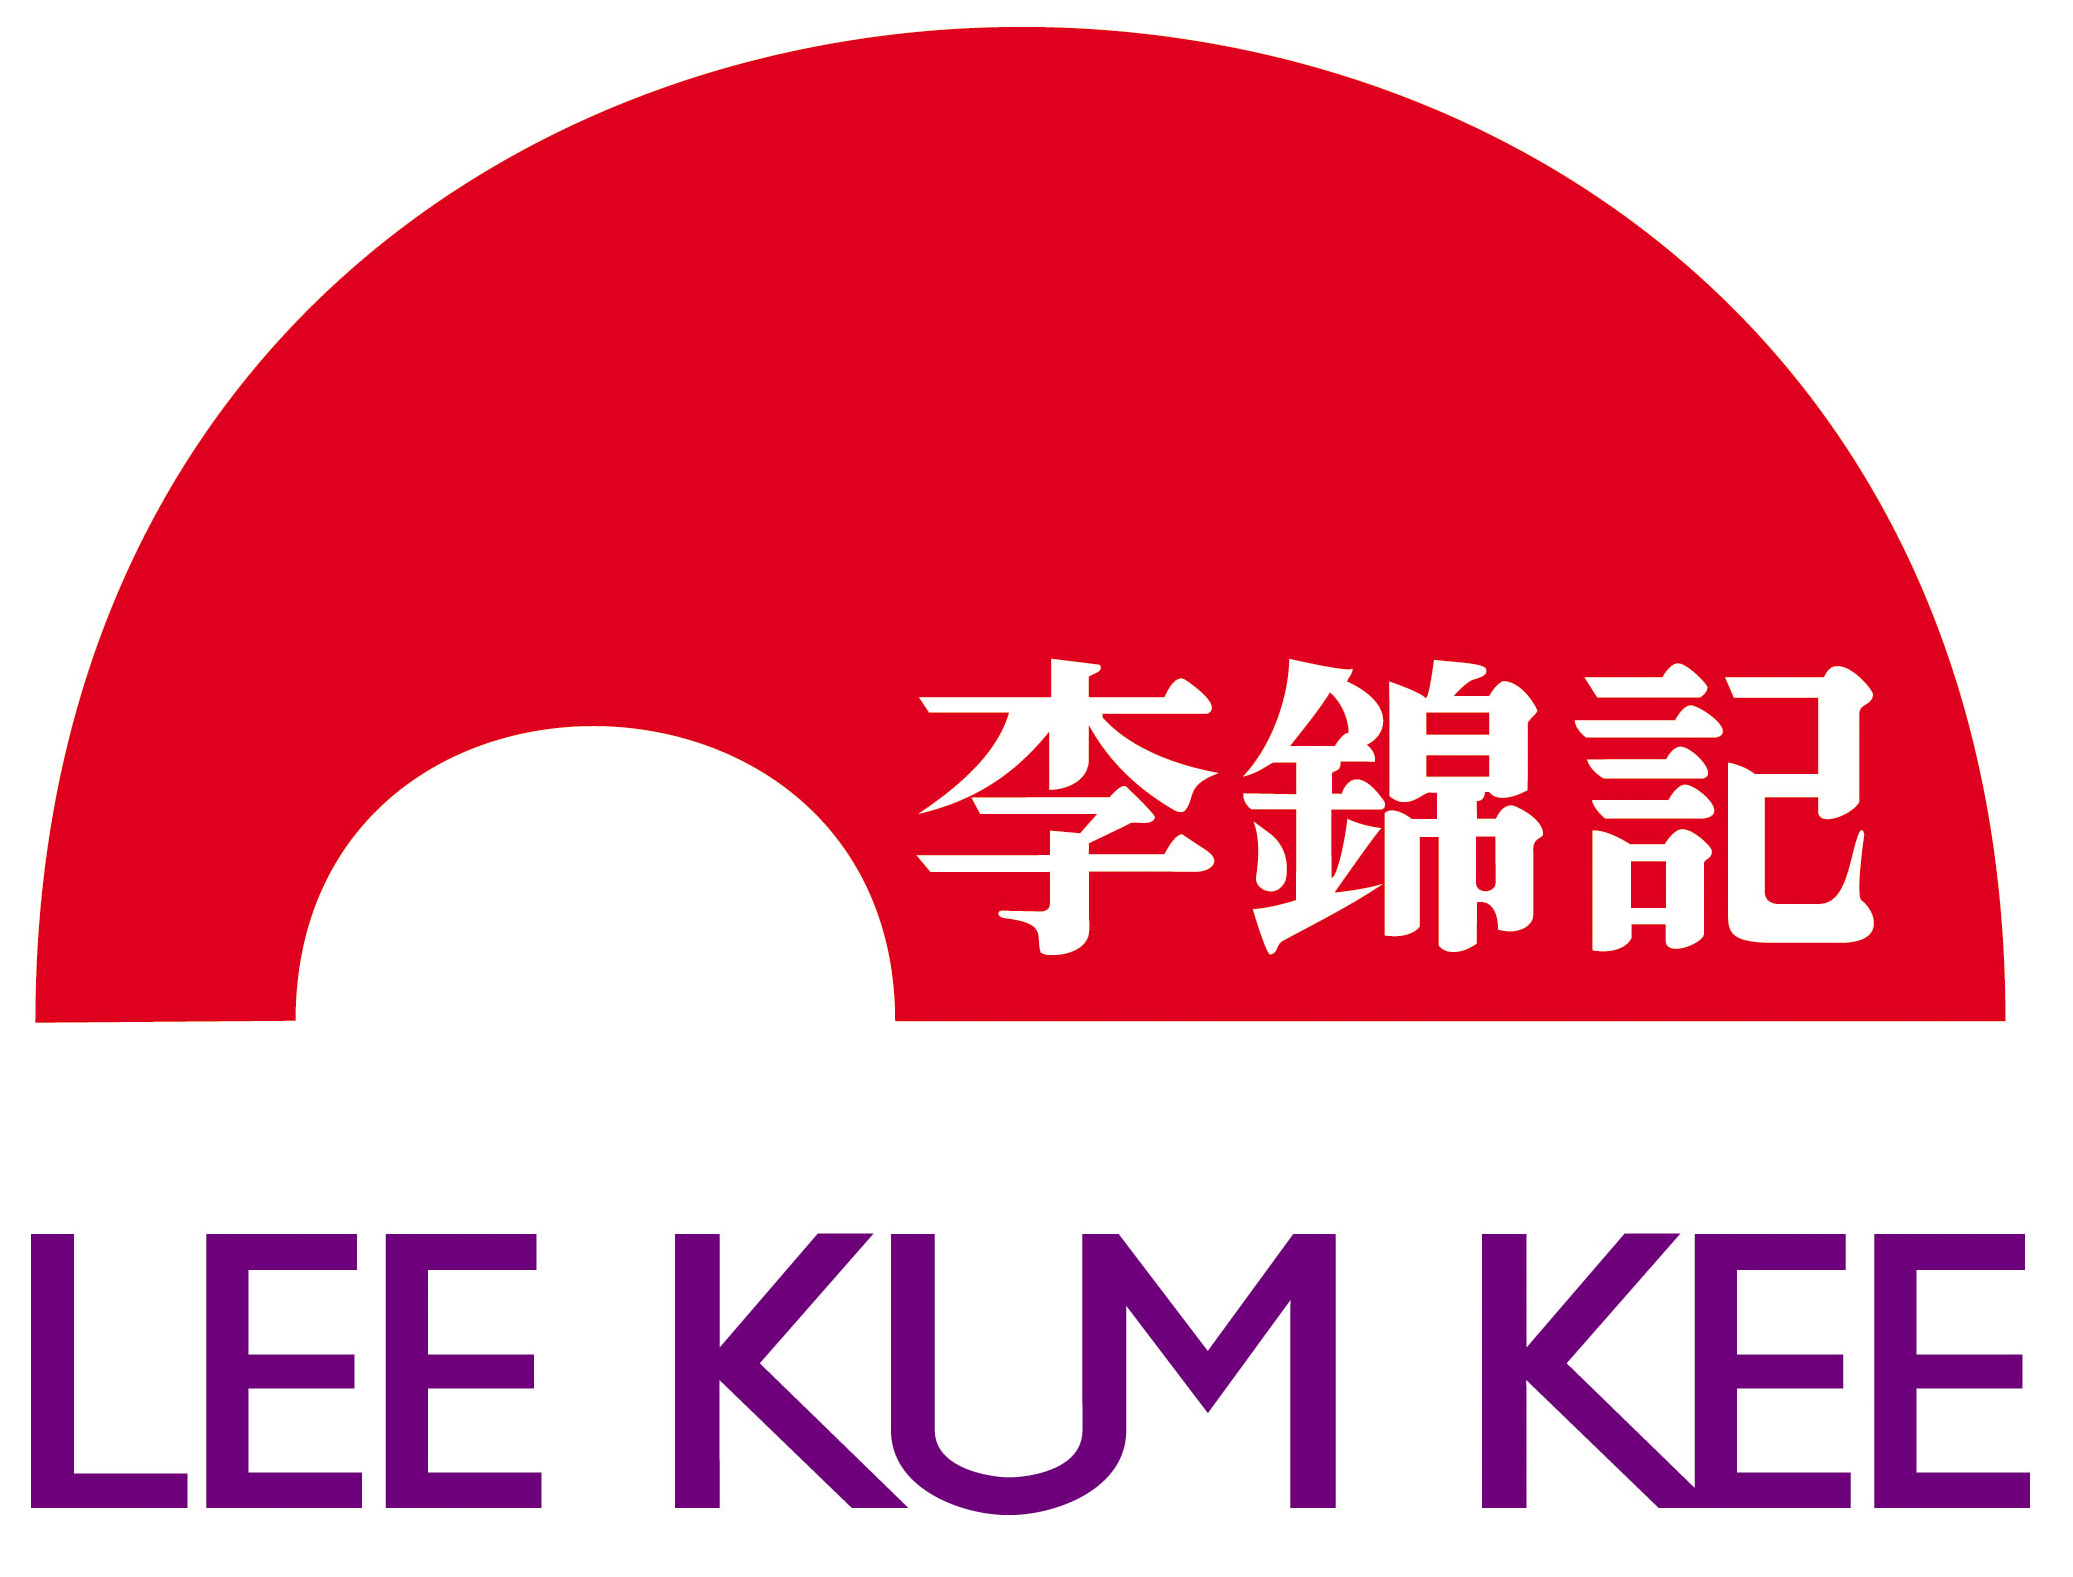 food scheme 2015 gold Lee Kum Kee